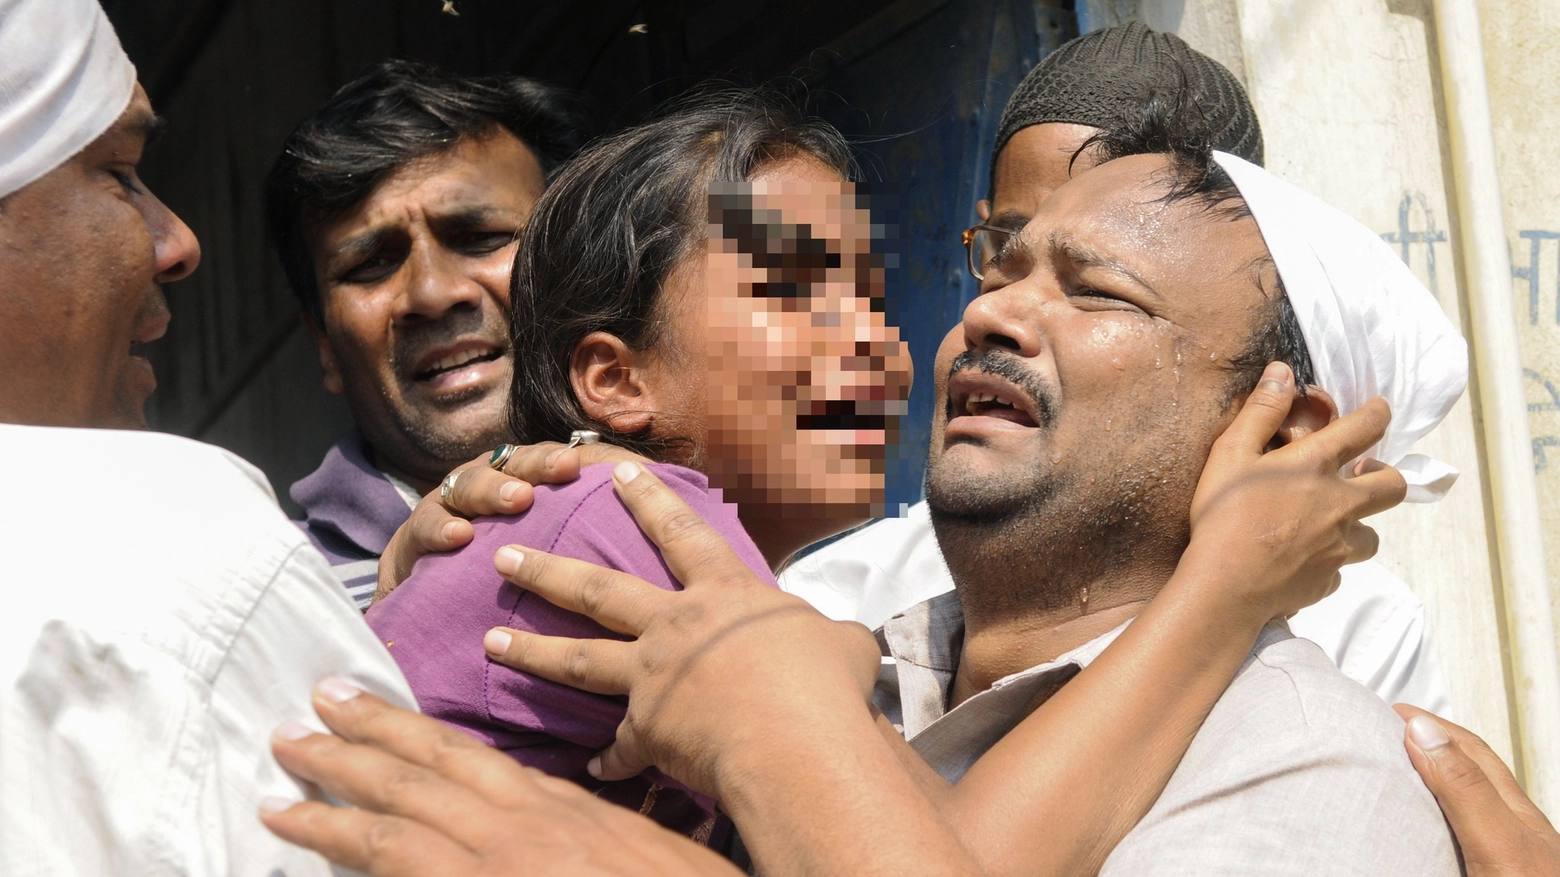 La sorella della 16enne stuprata e bruciata viva morta dopo 24 ore di agonia (AFP)